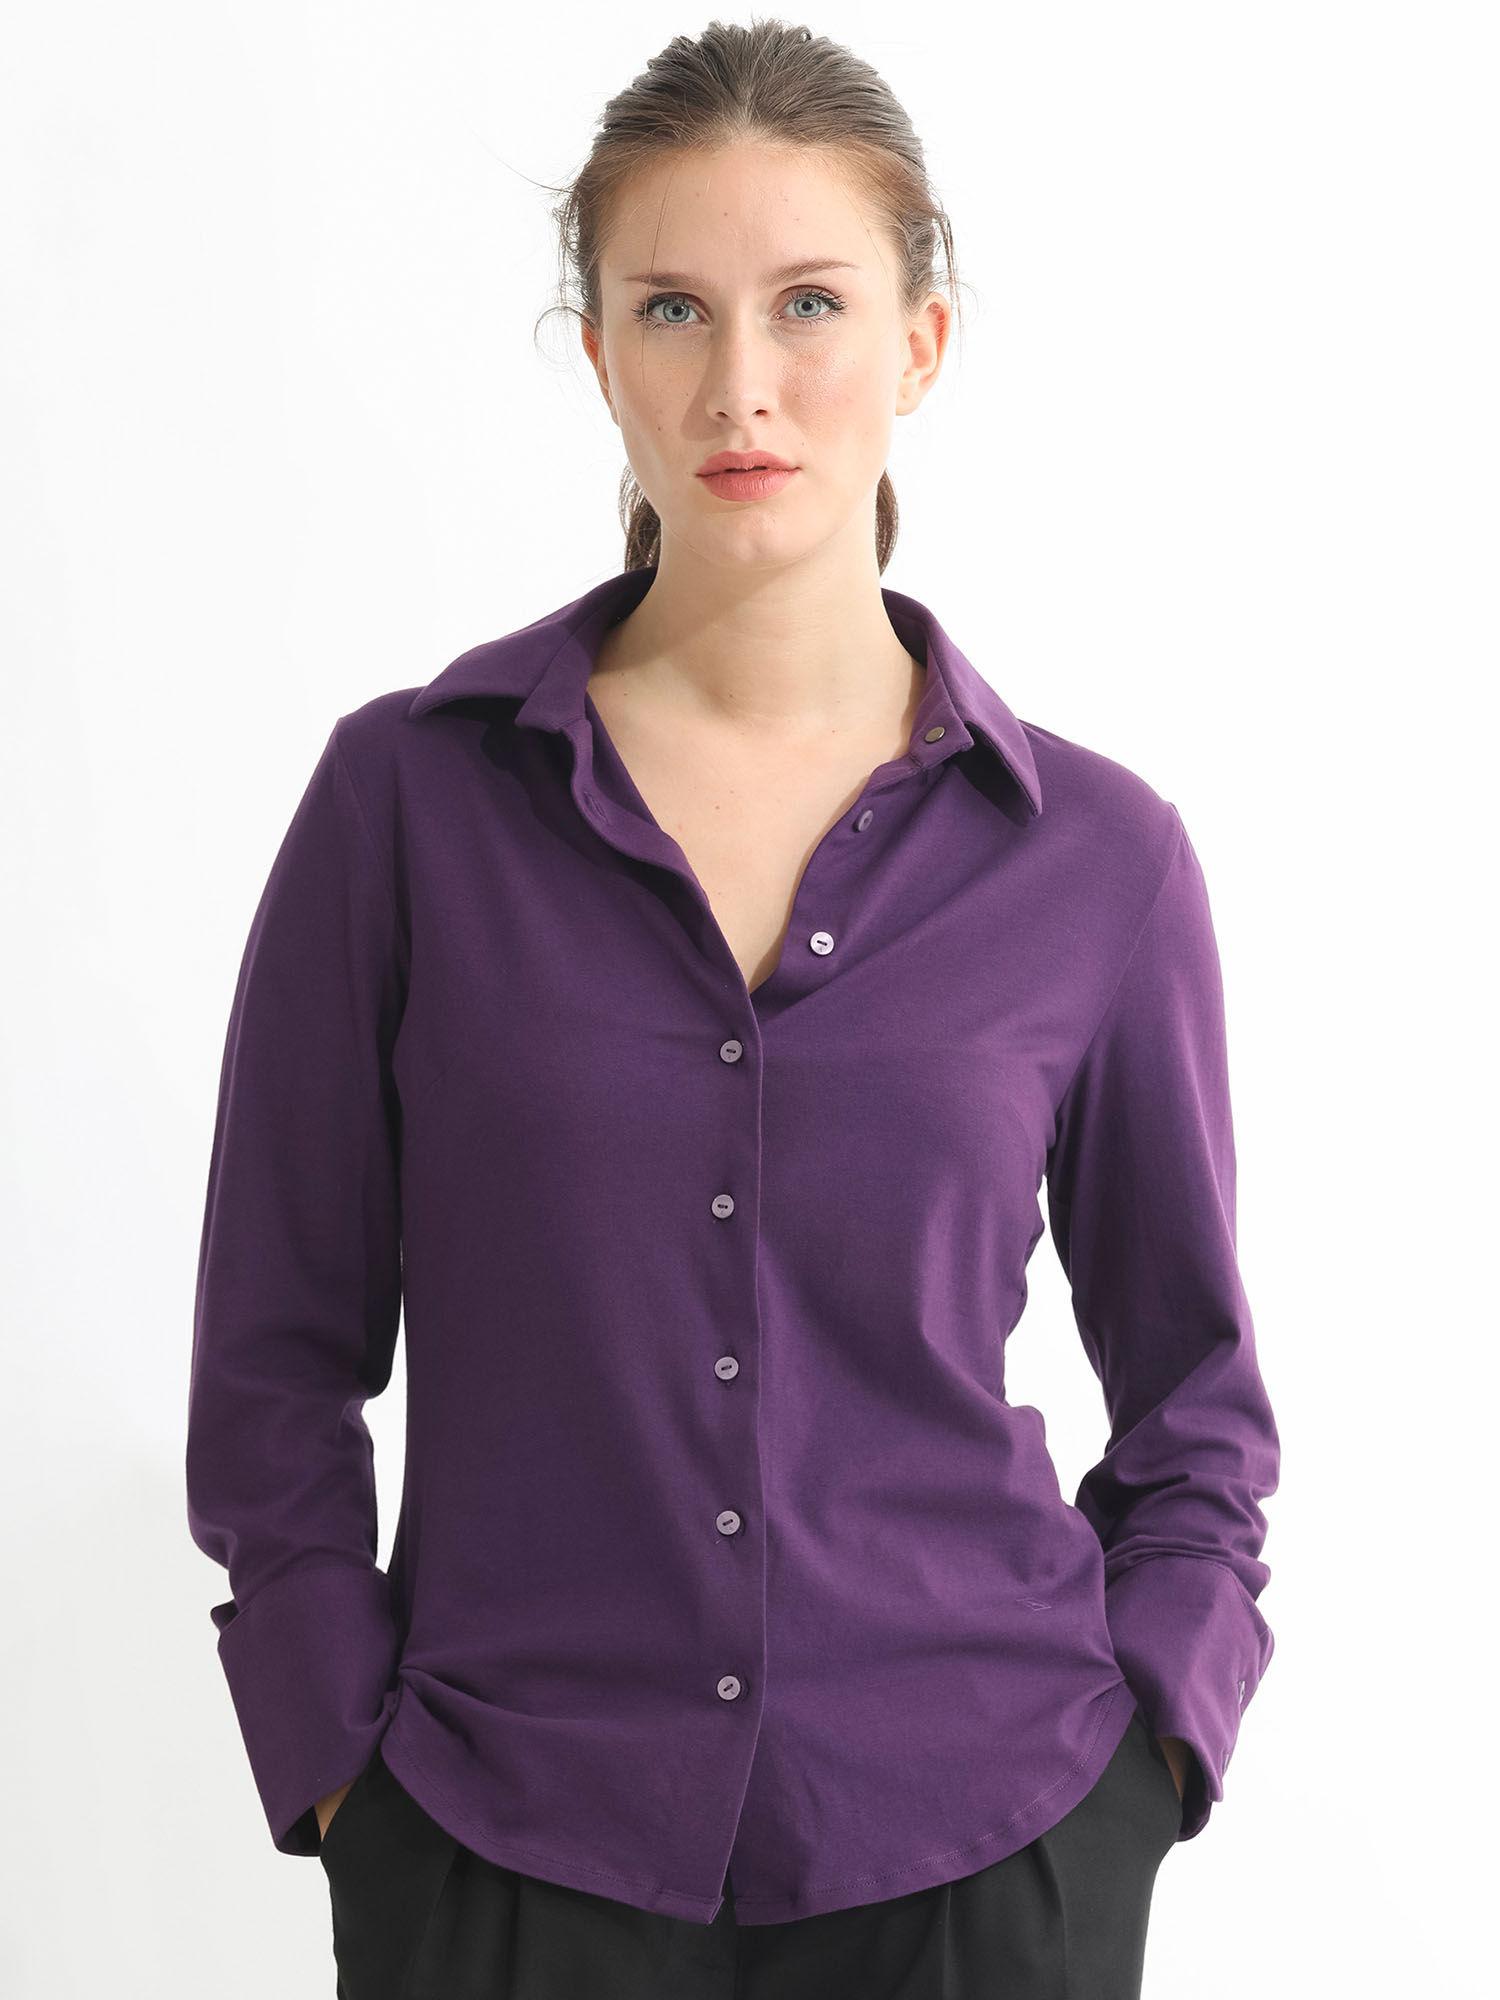 spie dark purple solid shirt